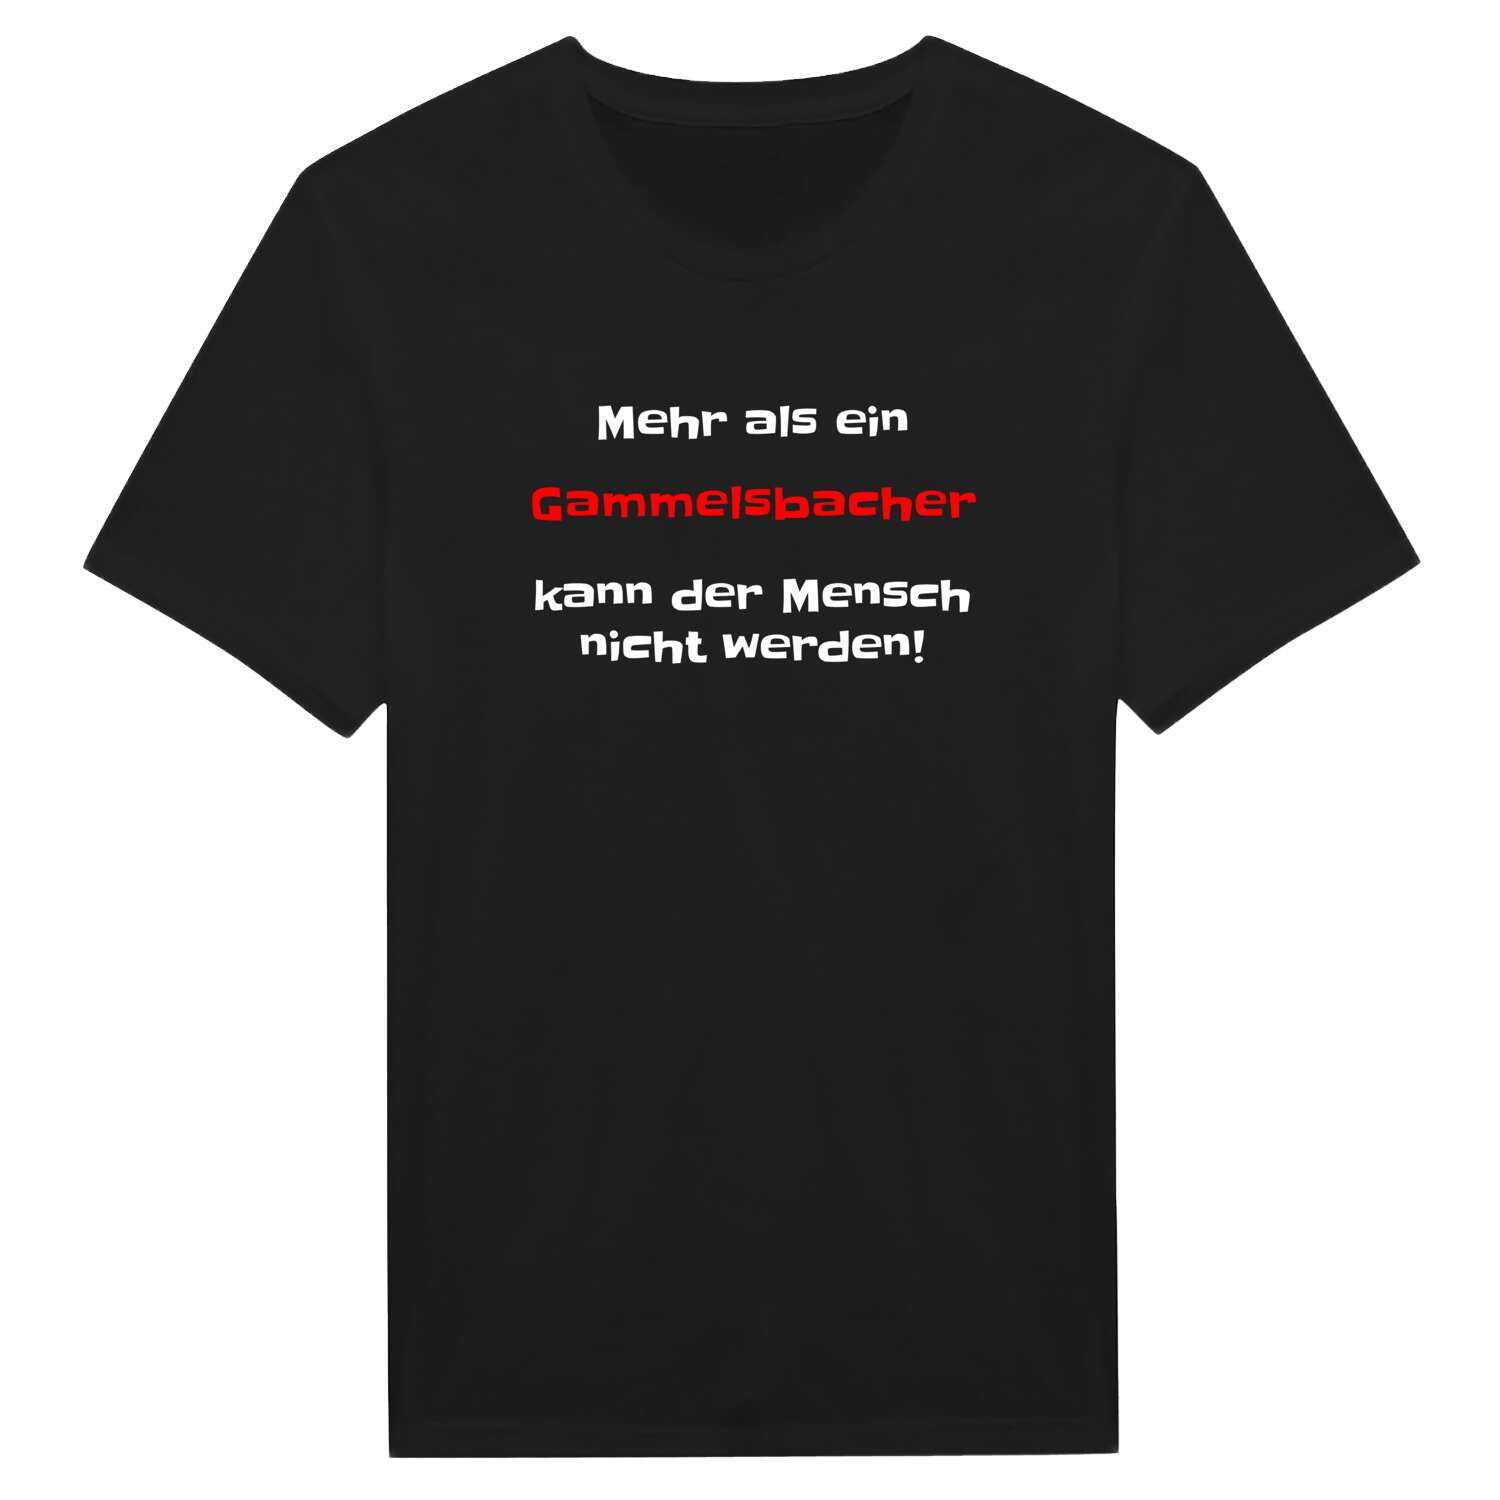 Gammelsbach T-Shirt »Mehr als ein«